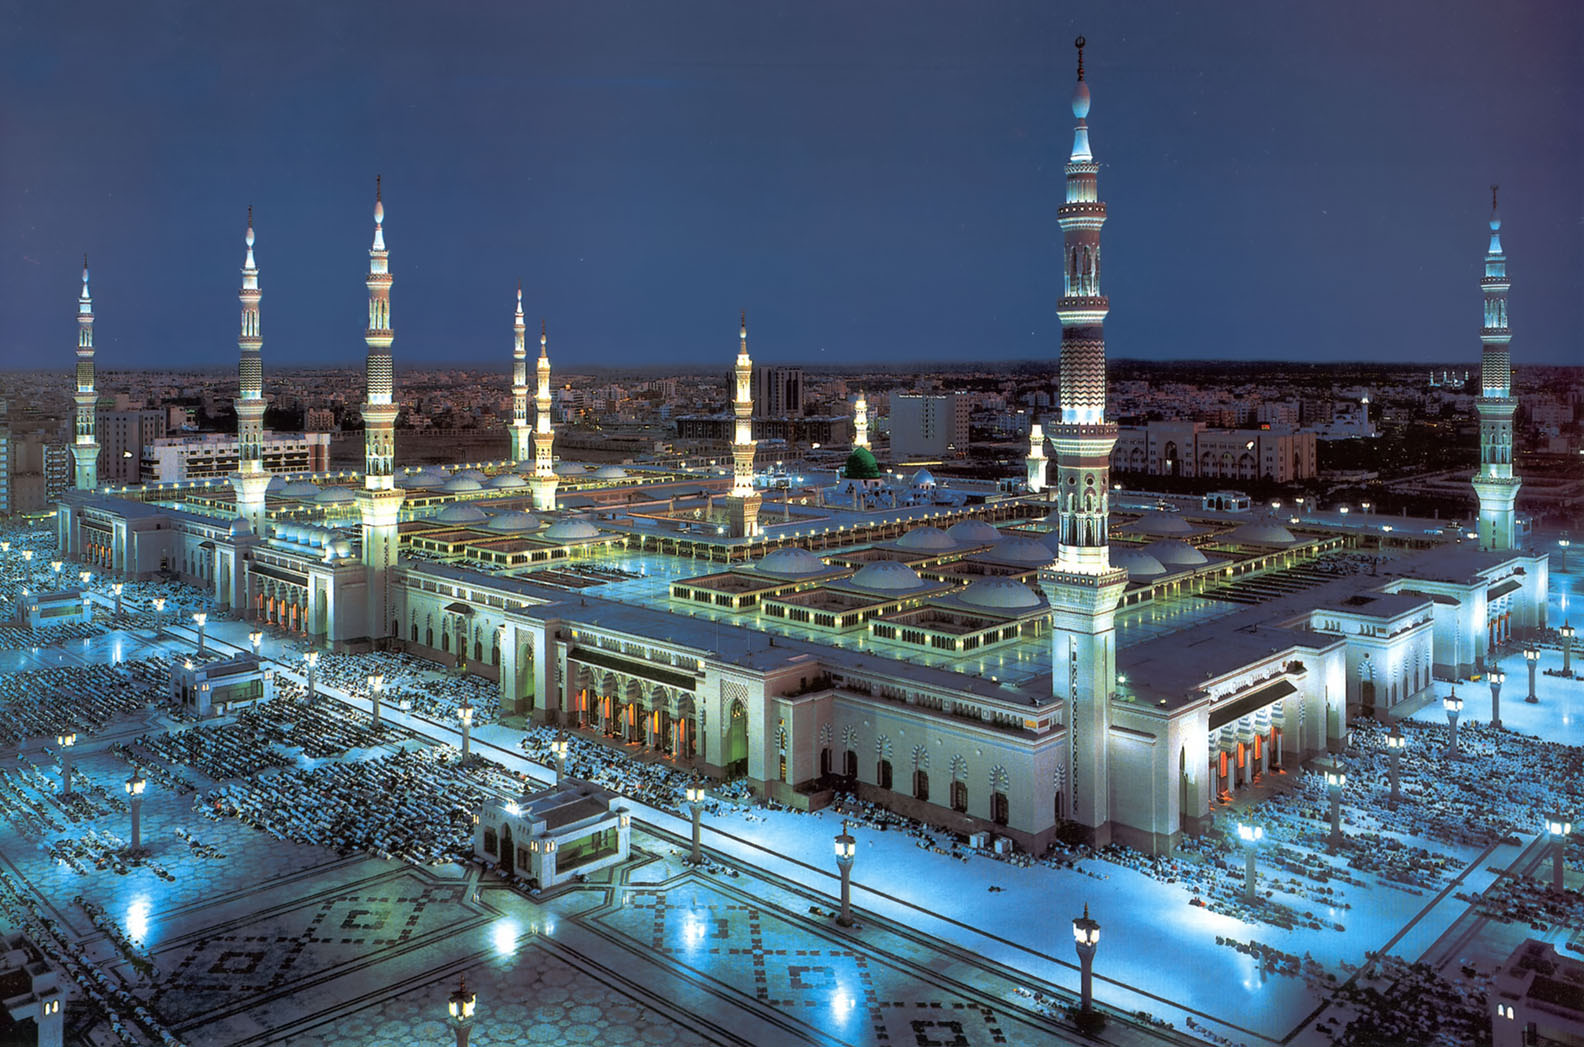 Al-Masjid al-Nabawi